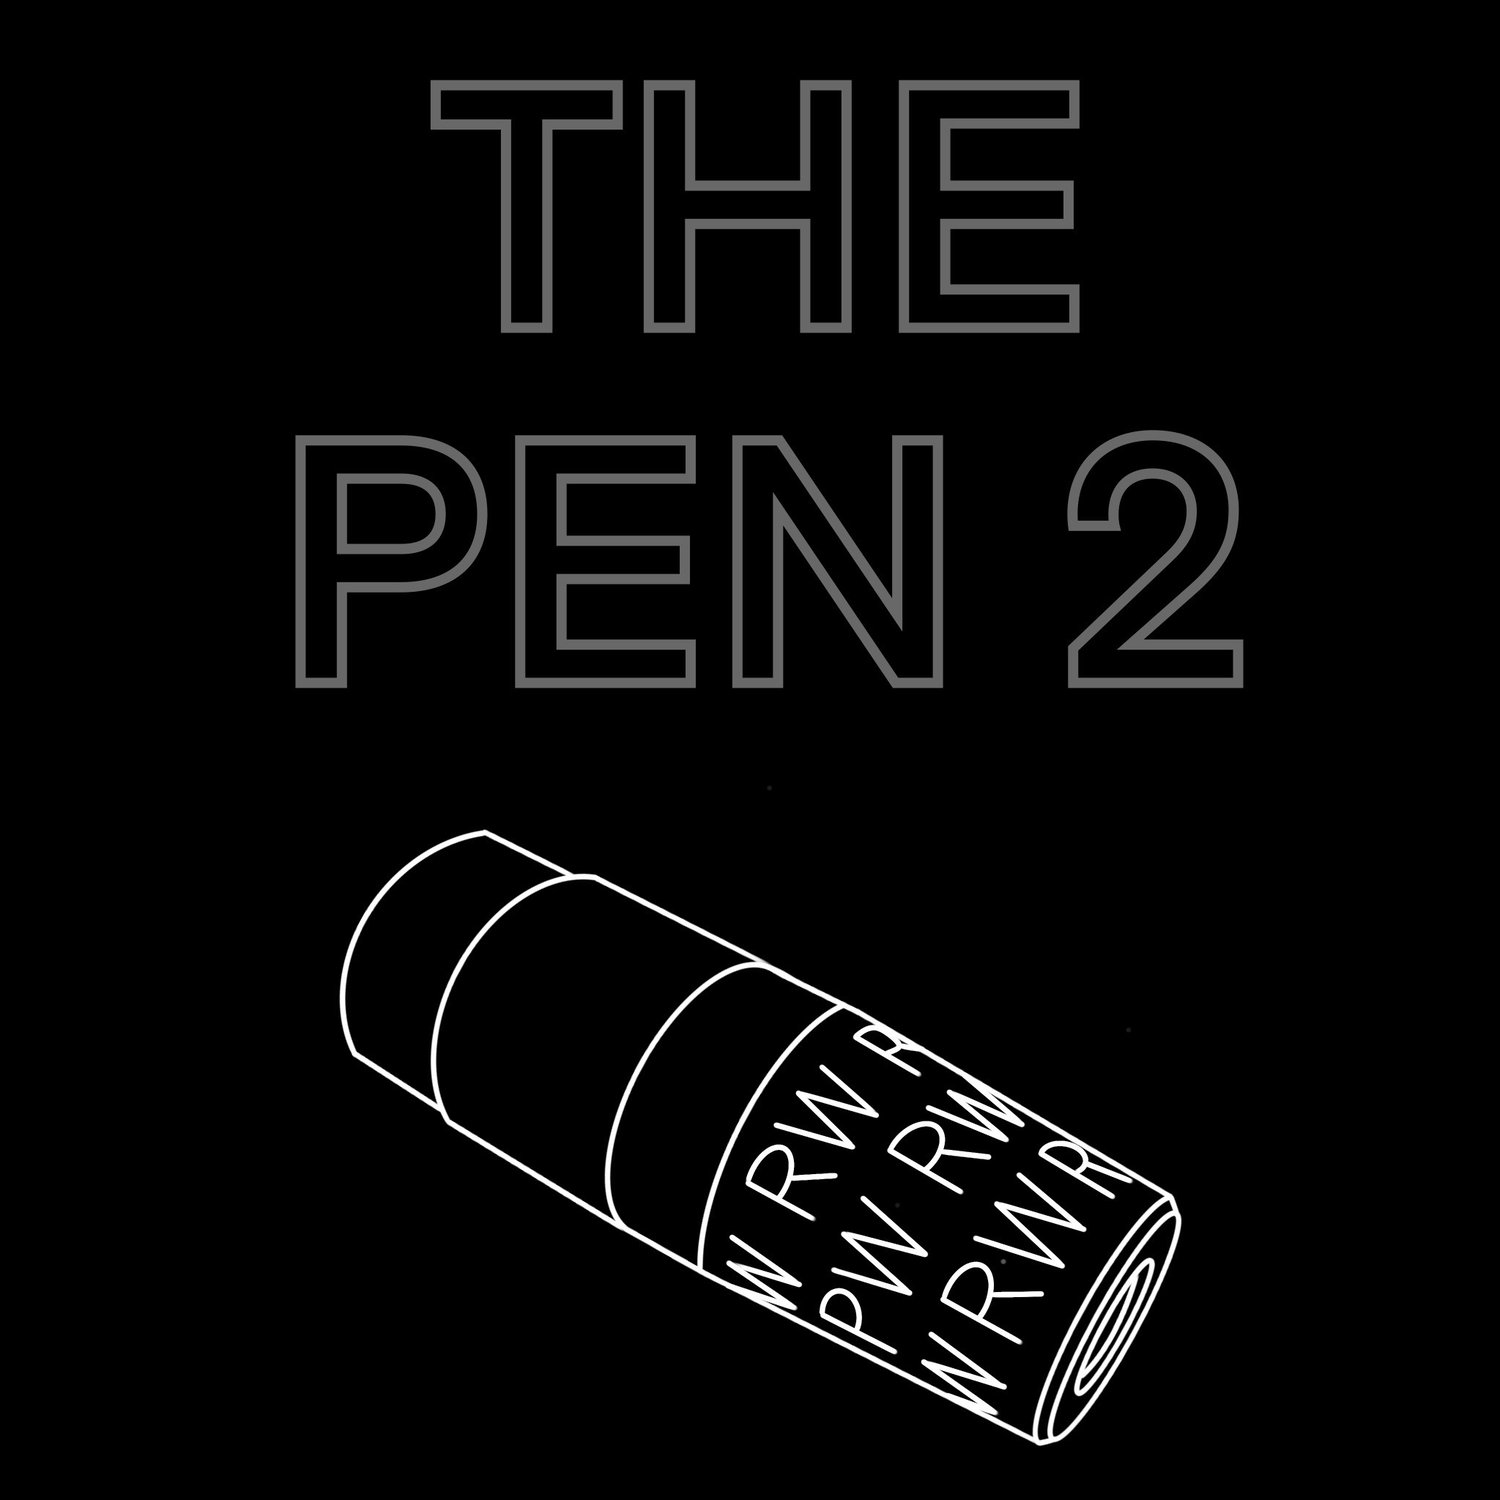 The pen 2